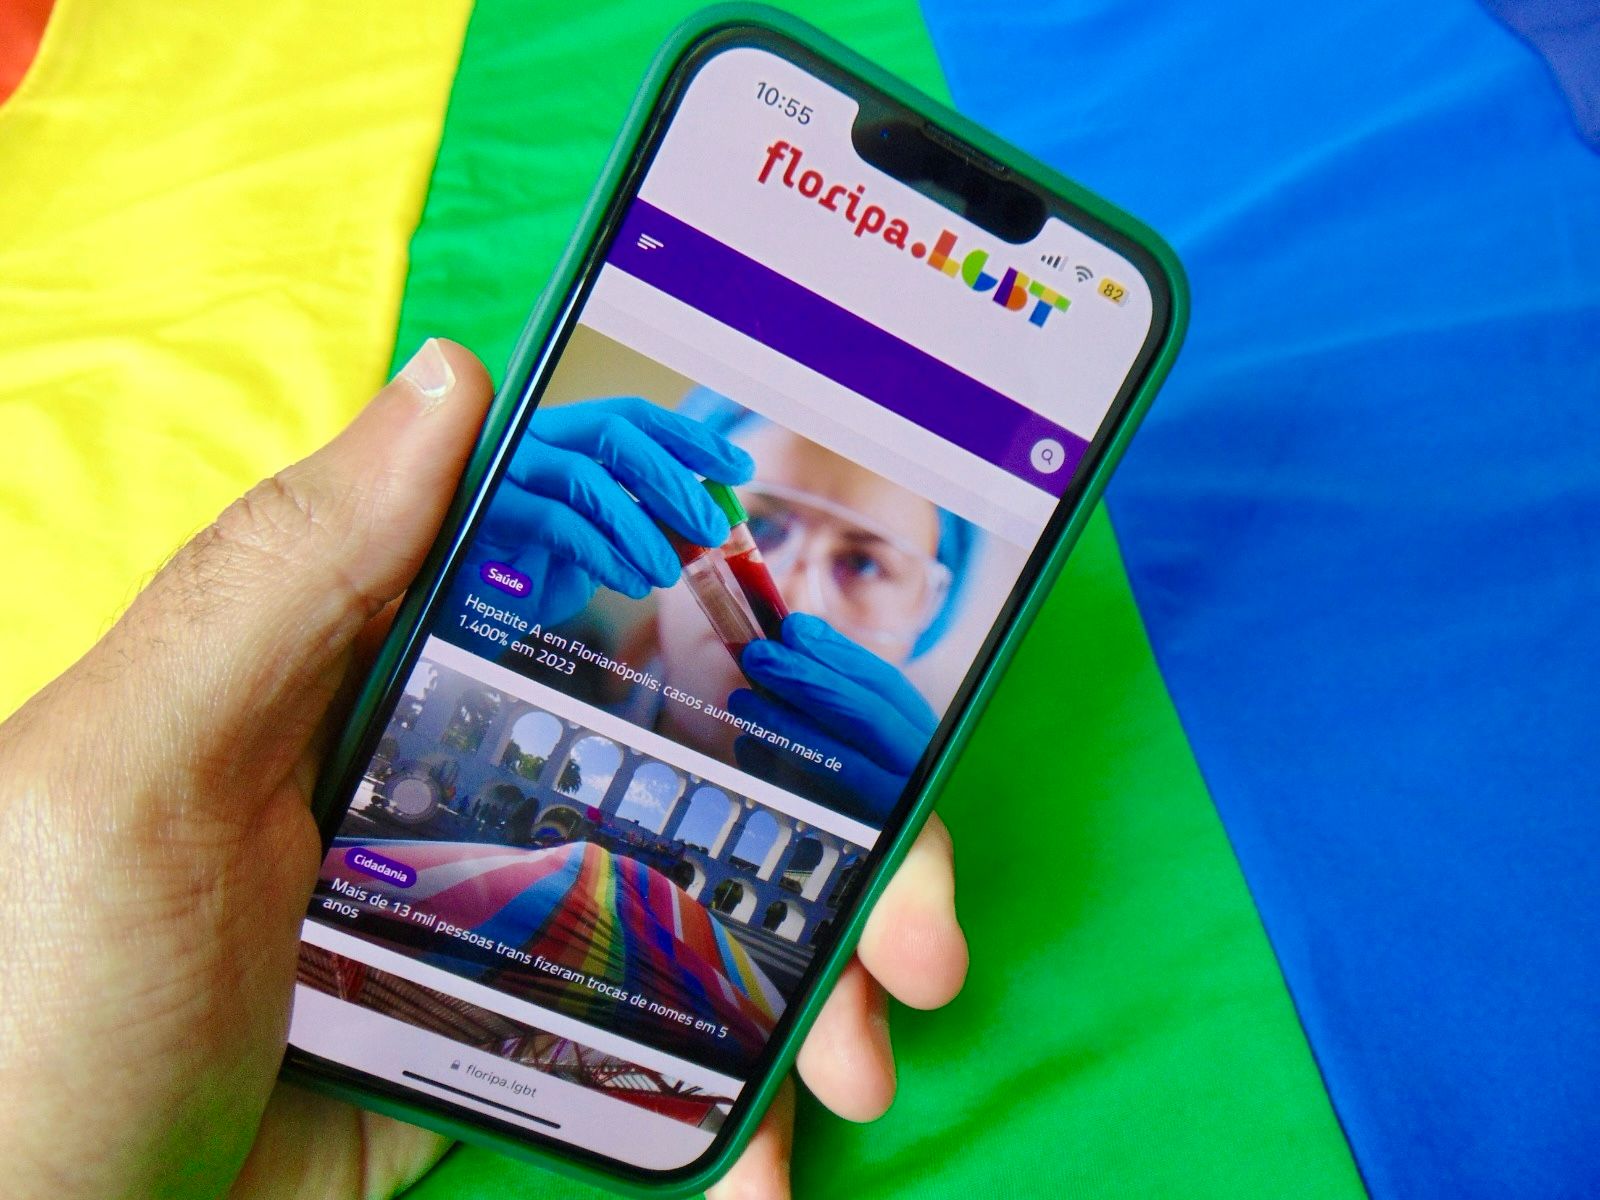 Receba notícias sobre a comunidade LGBT+ de Florianópolis no WhatsApp